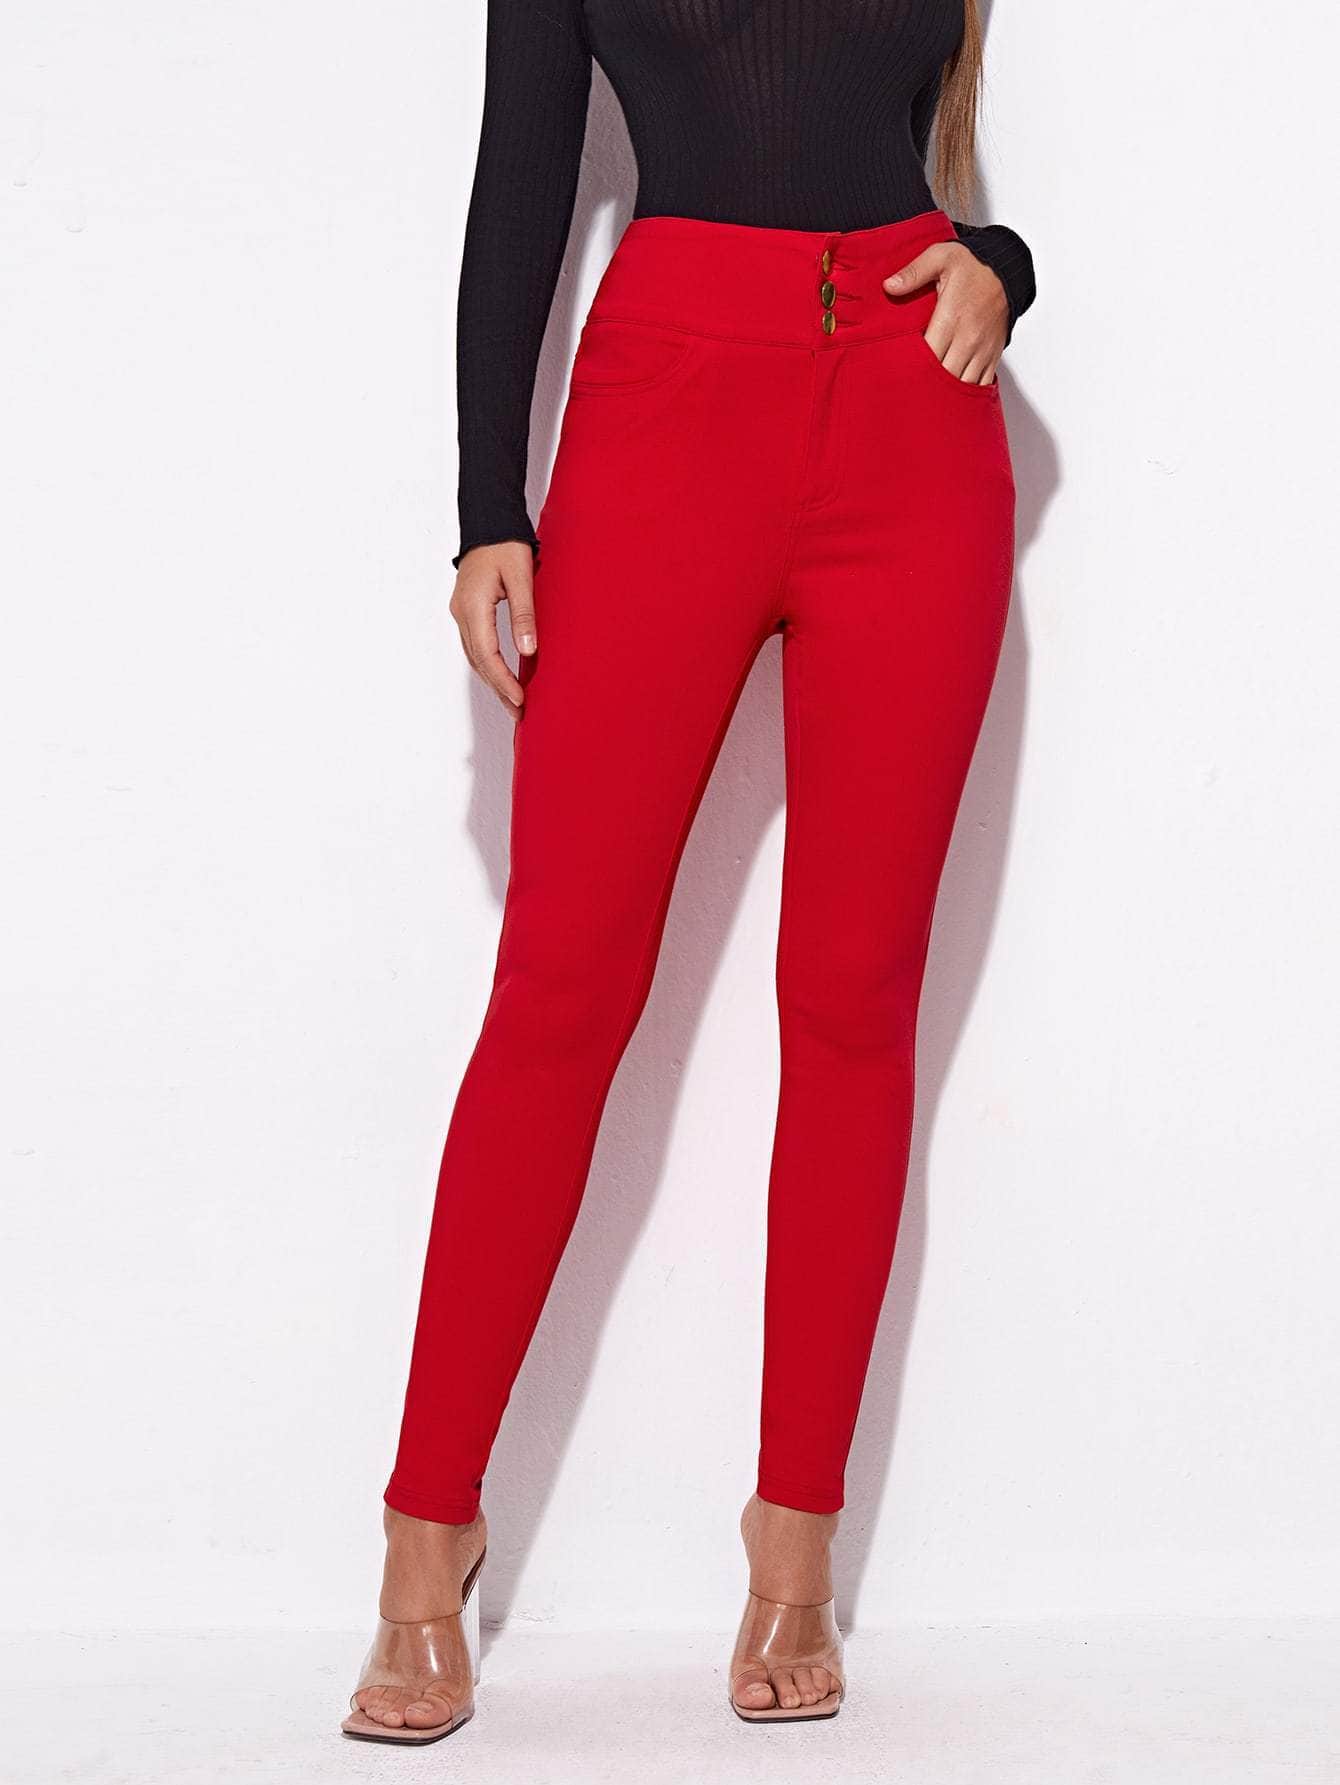 Muybonita.co pantalonesjeans5 Rojo / XS Jeans ajustados de cintura alta con lavado negro